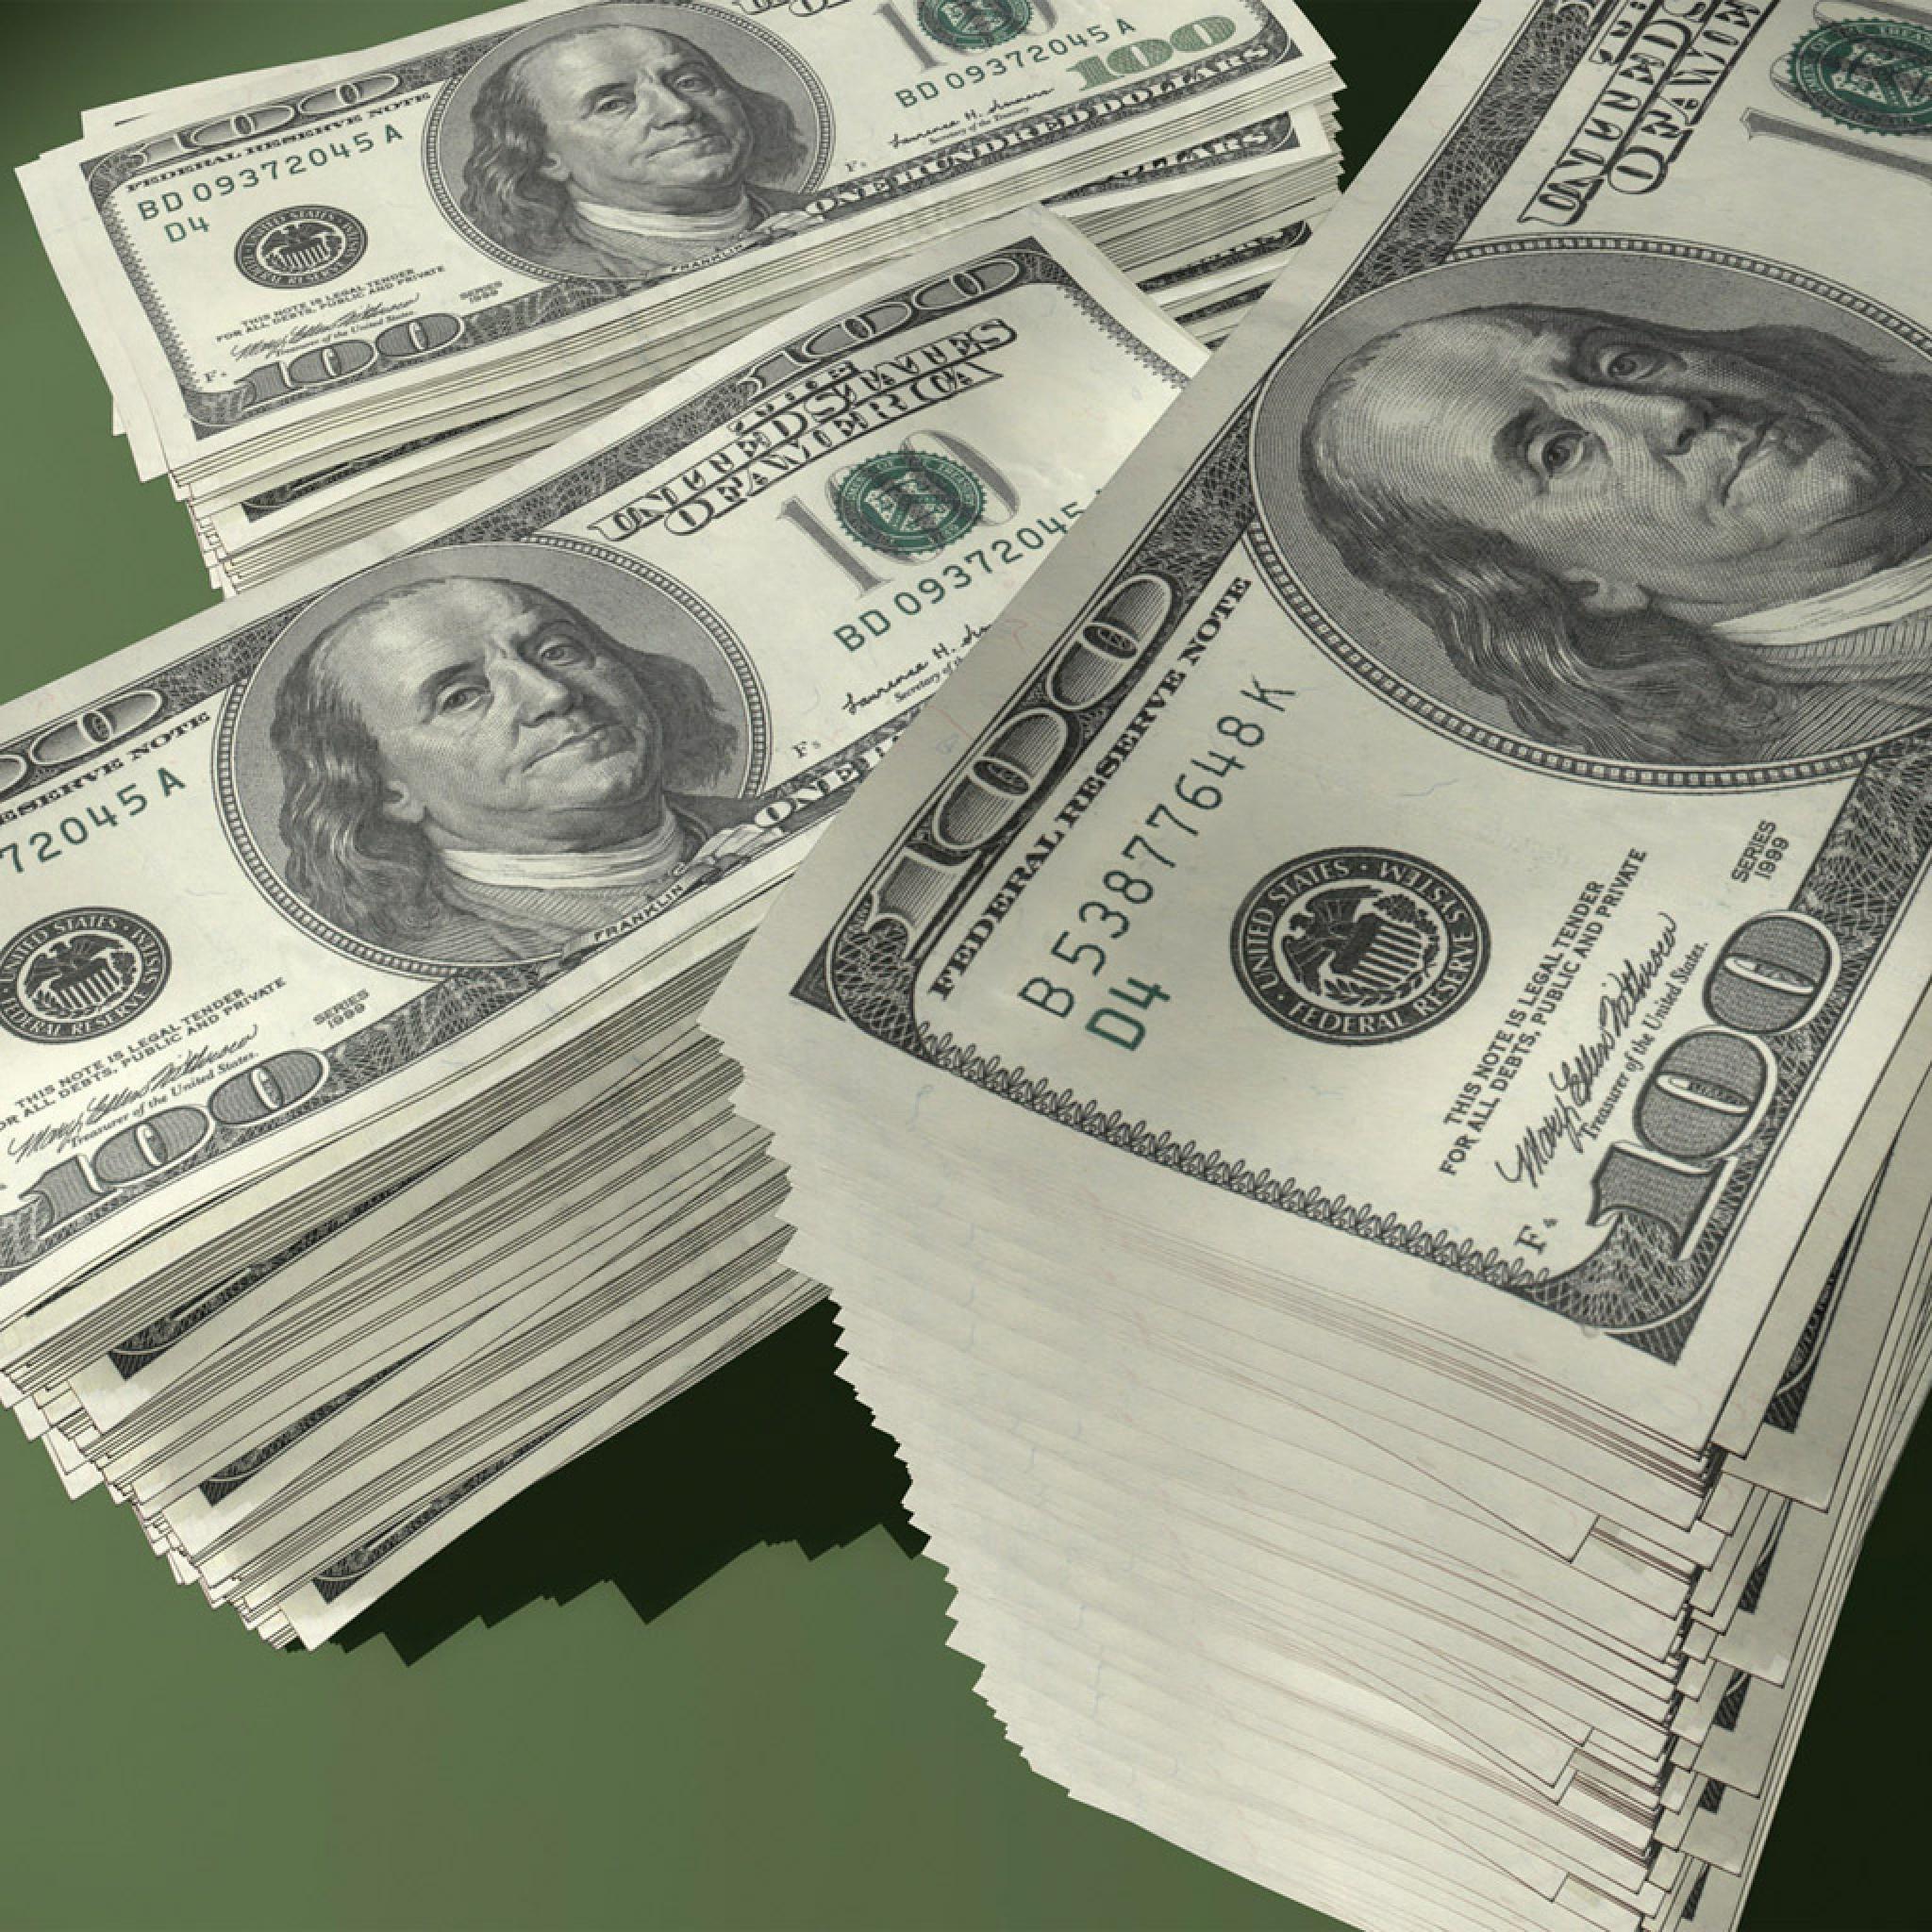 Abstract Retina iPad US 100 Dollar Bill Banknotes Wallpapers for